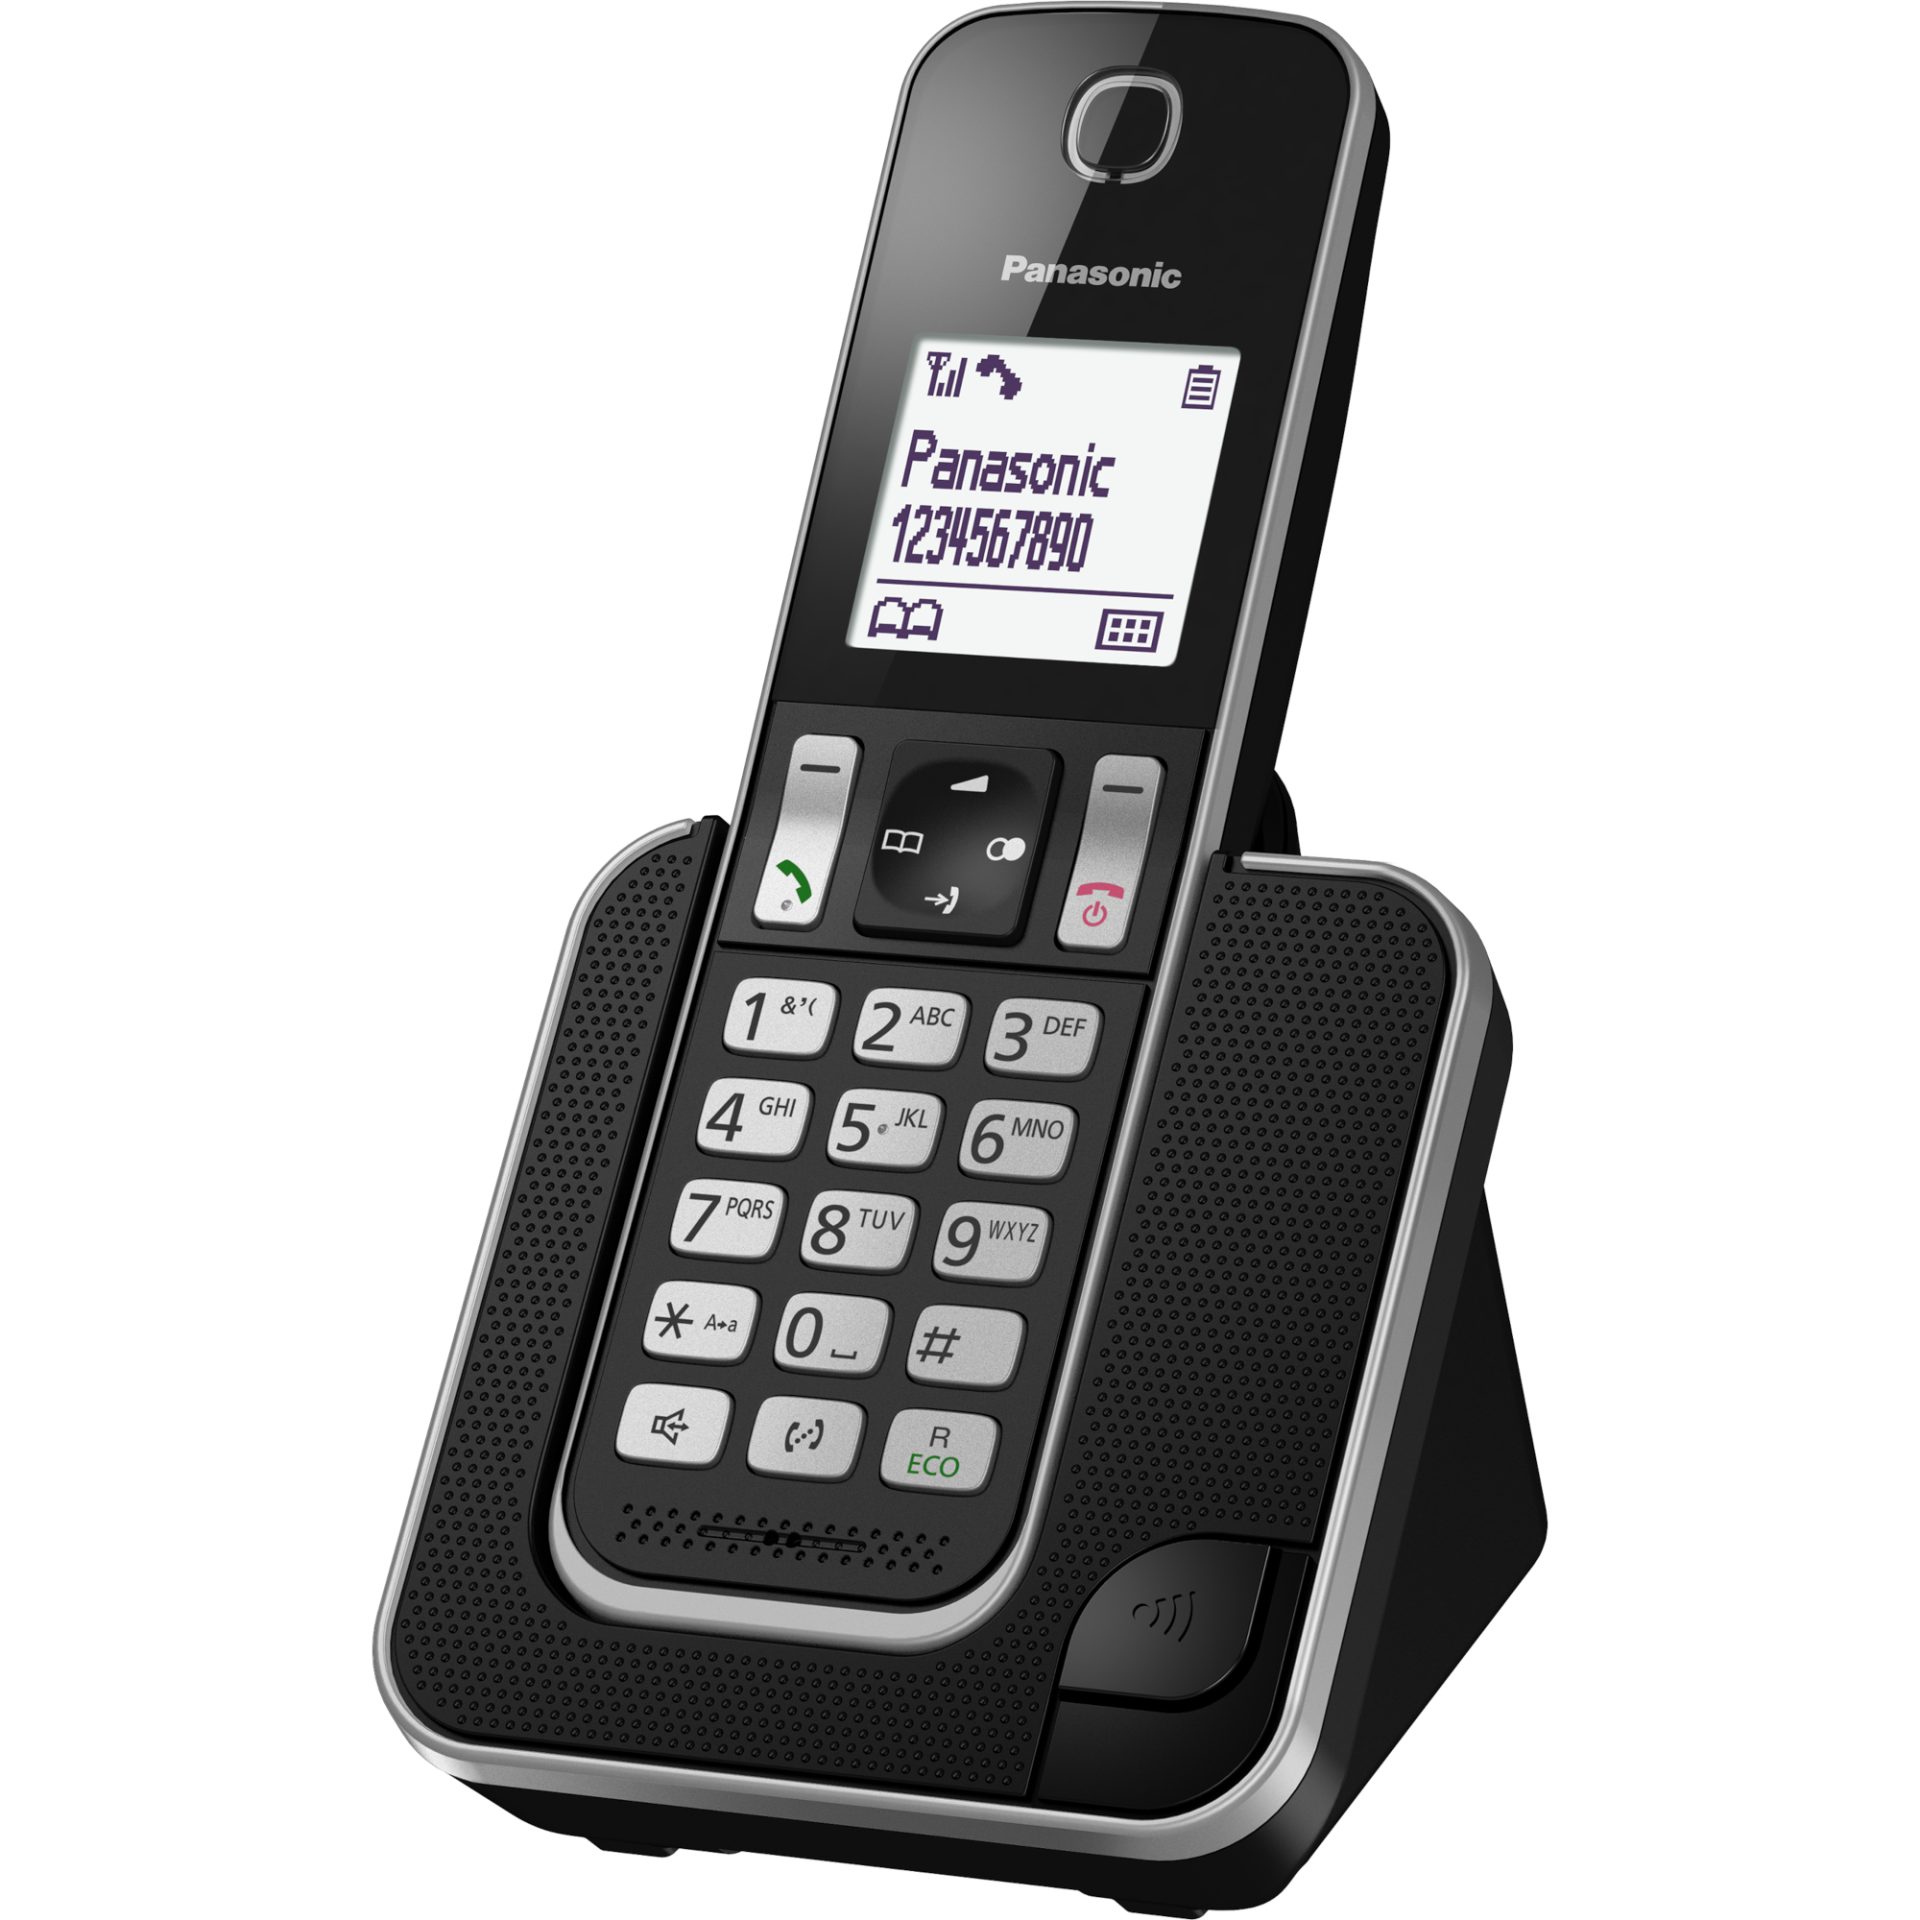 Panasonic KX-TGD310 DECT telefon (režim Eco Plus, blokování nežádoucích hovorů, SMS, dlouhá životnost baterie, DECT Security), černá a stříbrná